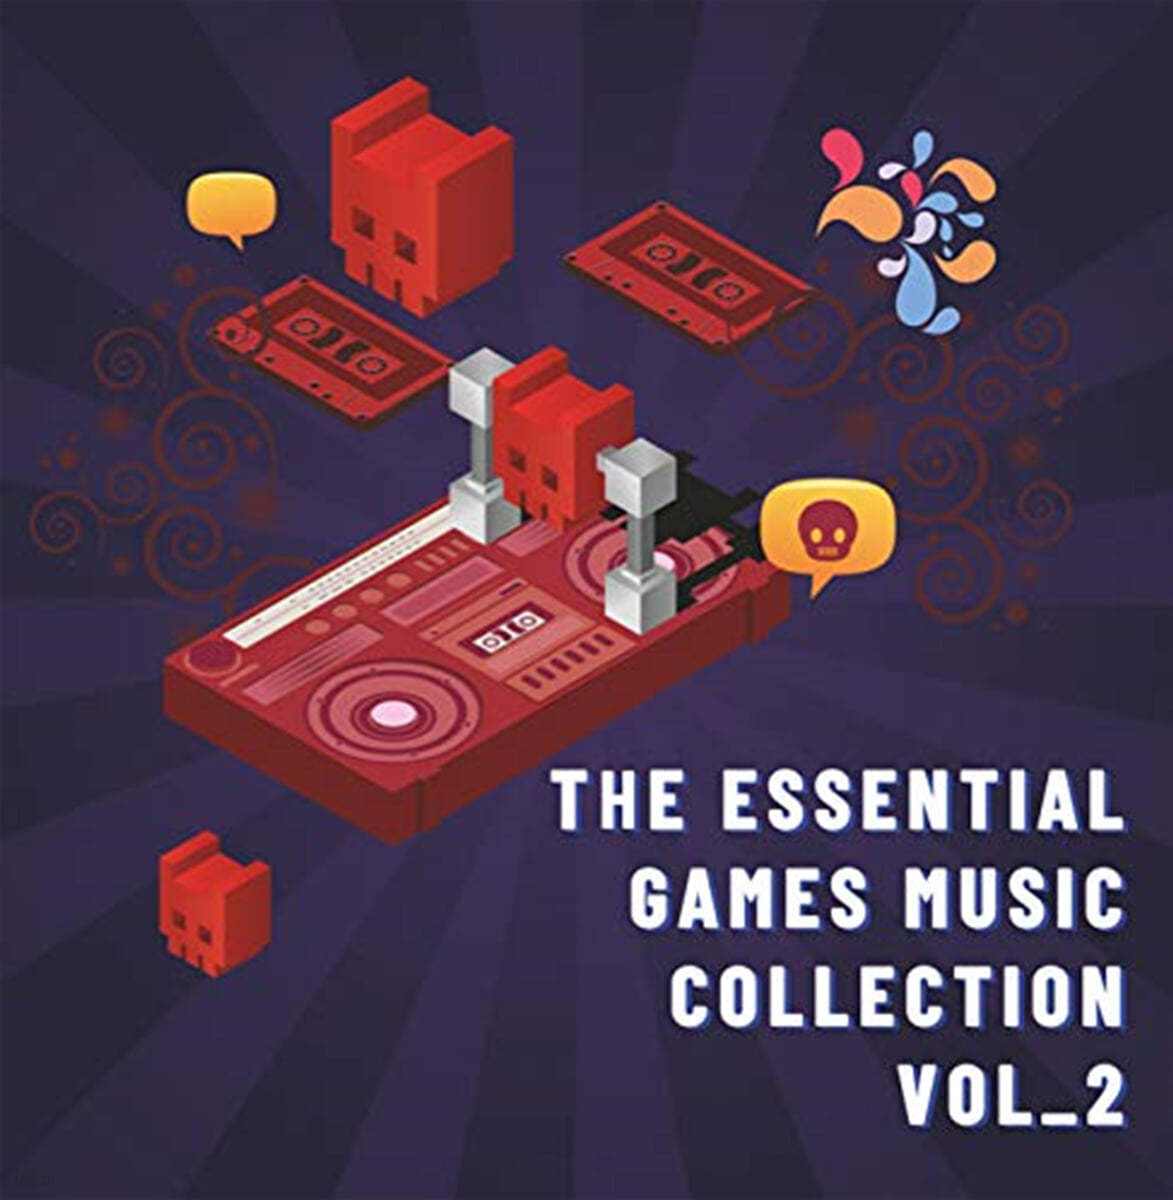 세계 최고의 게임음악 콜렉션 2집 (The Essential Games Music Collection Vol. 2) [LP] 